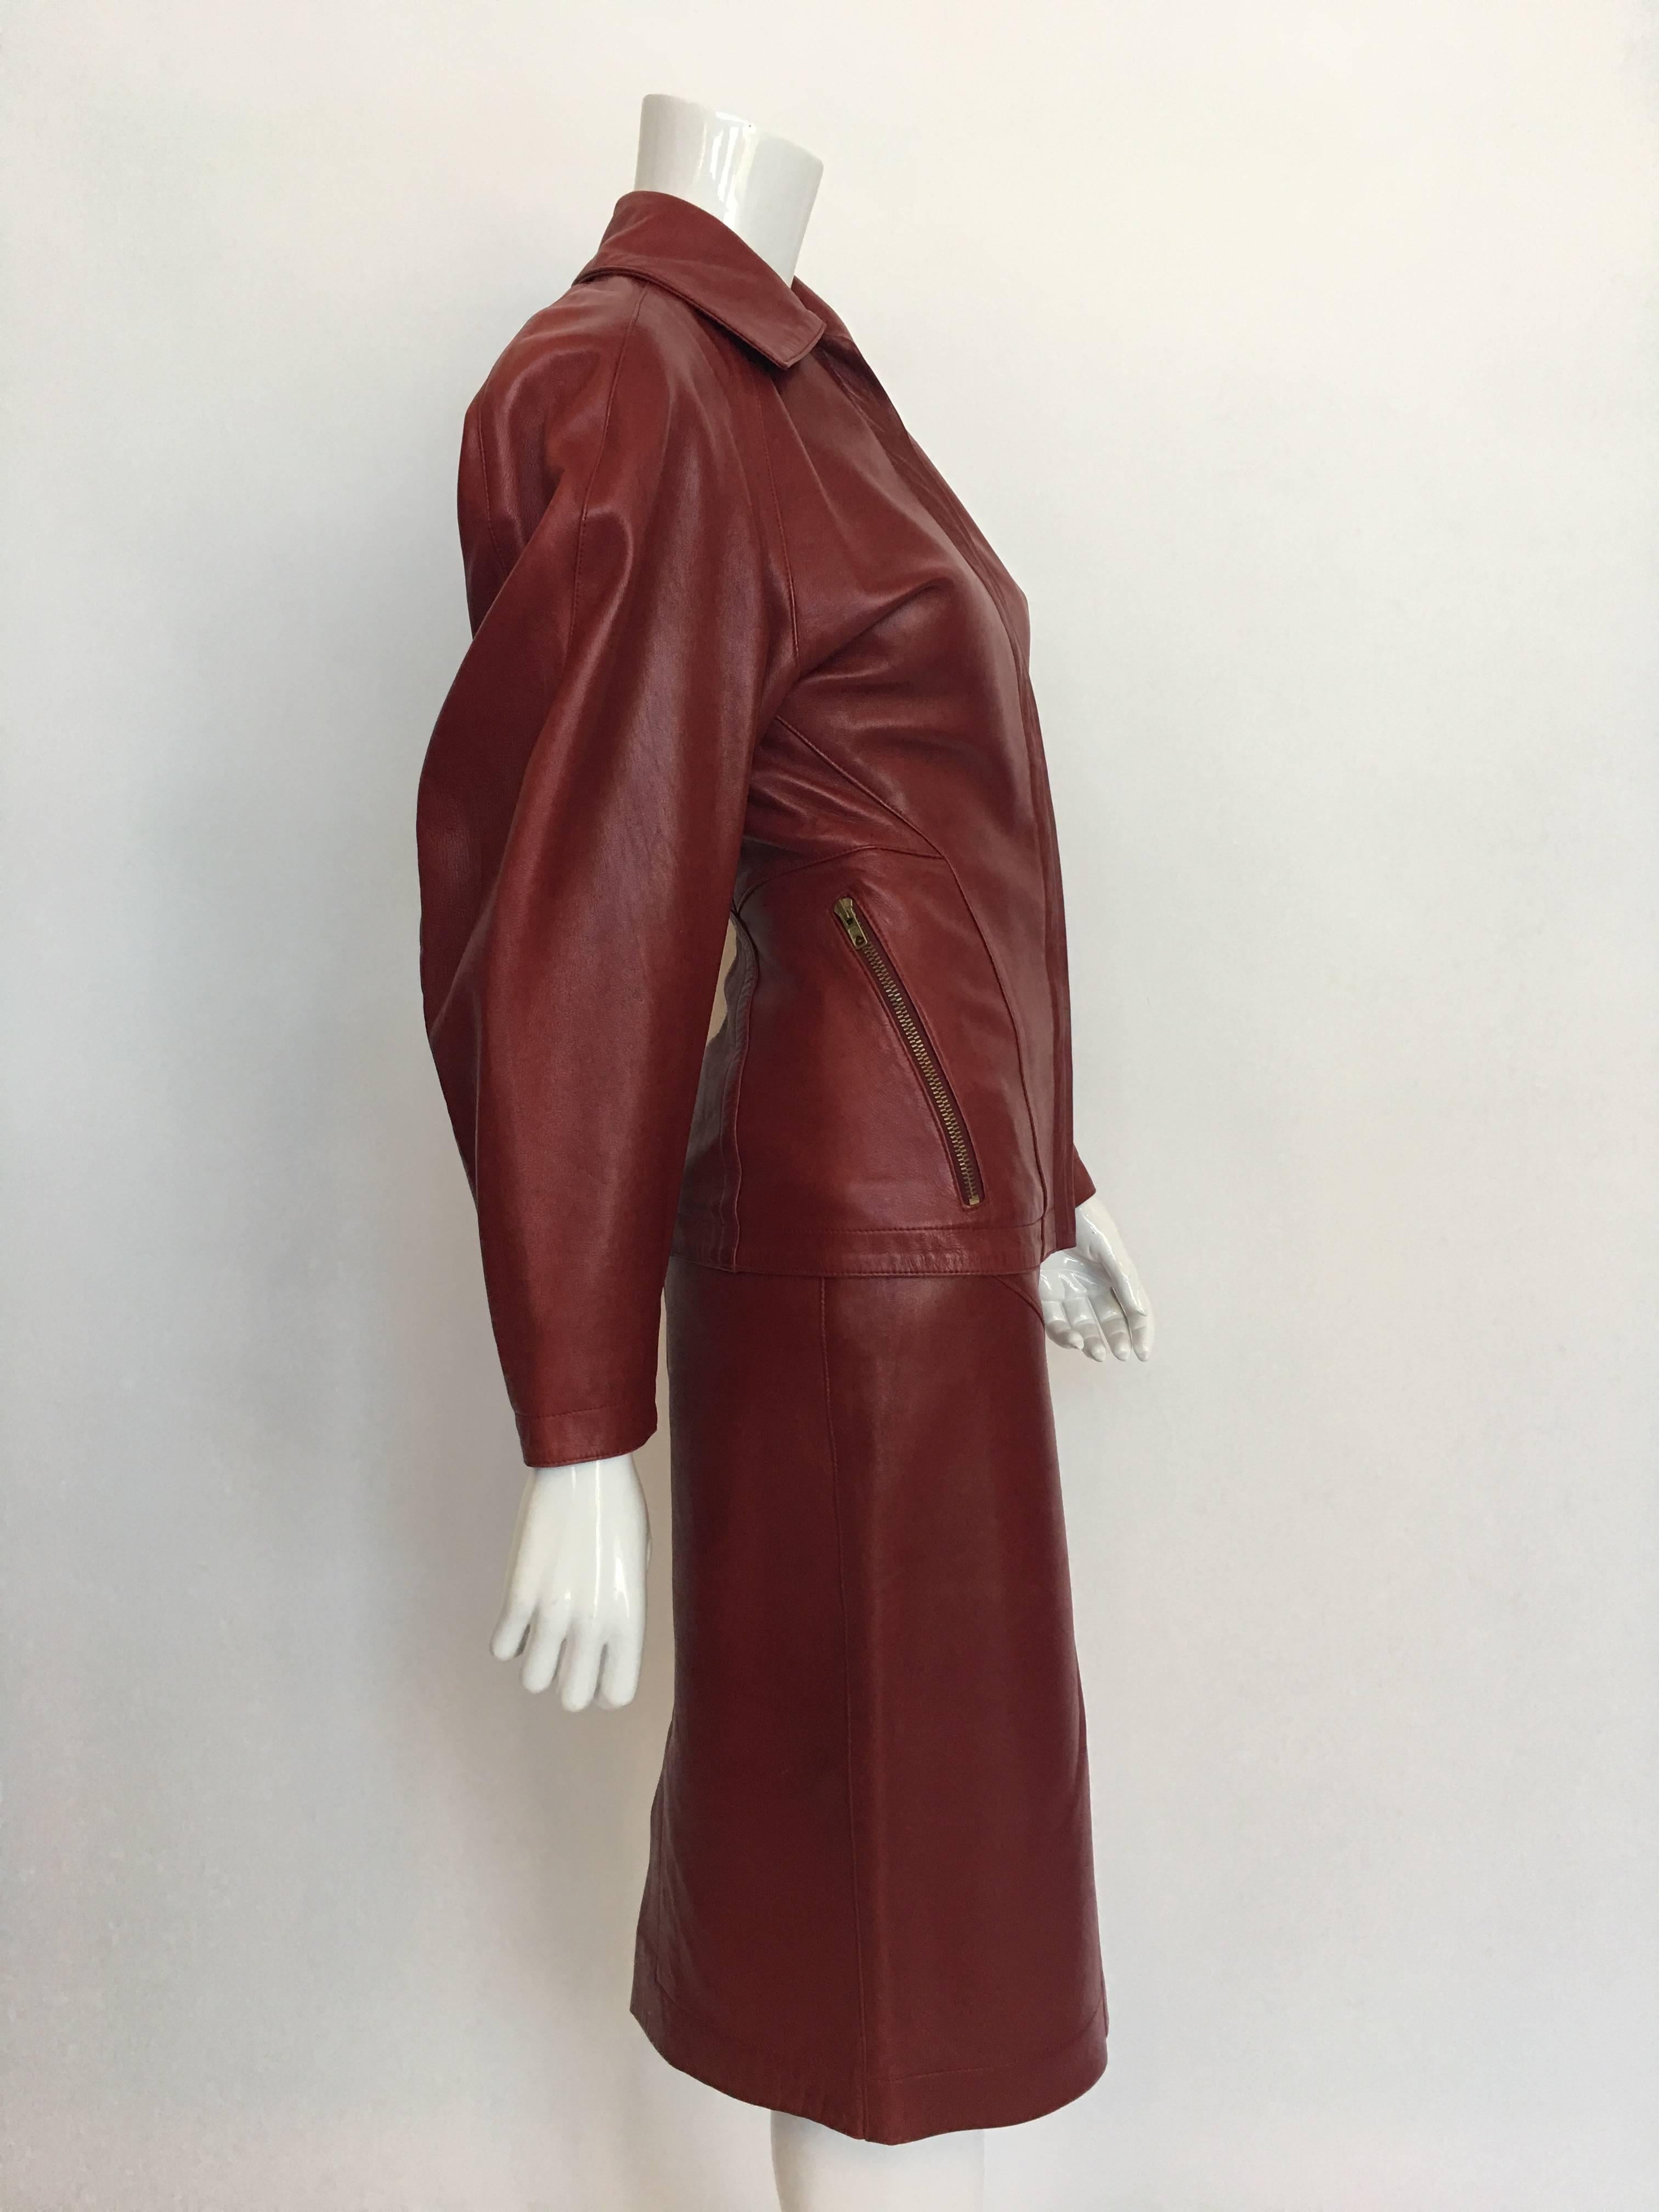 Combinaison jupe en cuir rouge Alaia 1980's avec 2 poches zippées sur le devant et plis inversés dans le dos.
La jupe est munie d'une fermeture à glissière et d'un bouton-pression et d'une aération au dos. La jupe est également entièrement doublée